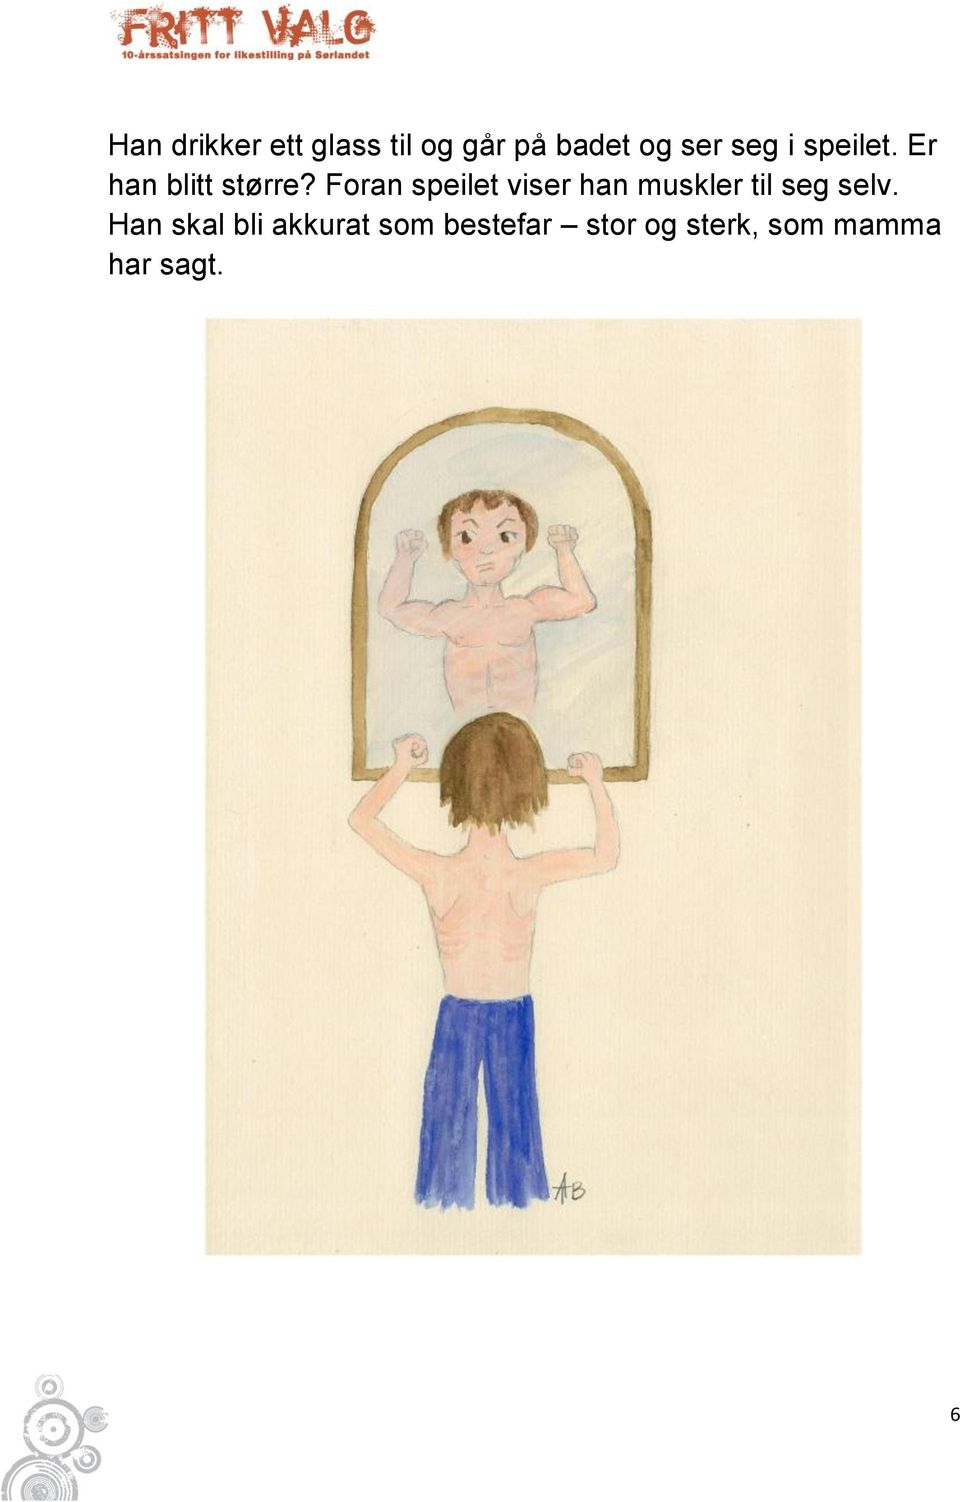 Foran speilet viser han muskler til seg selv.